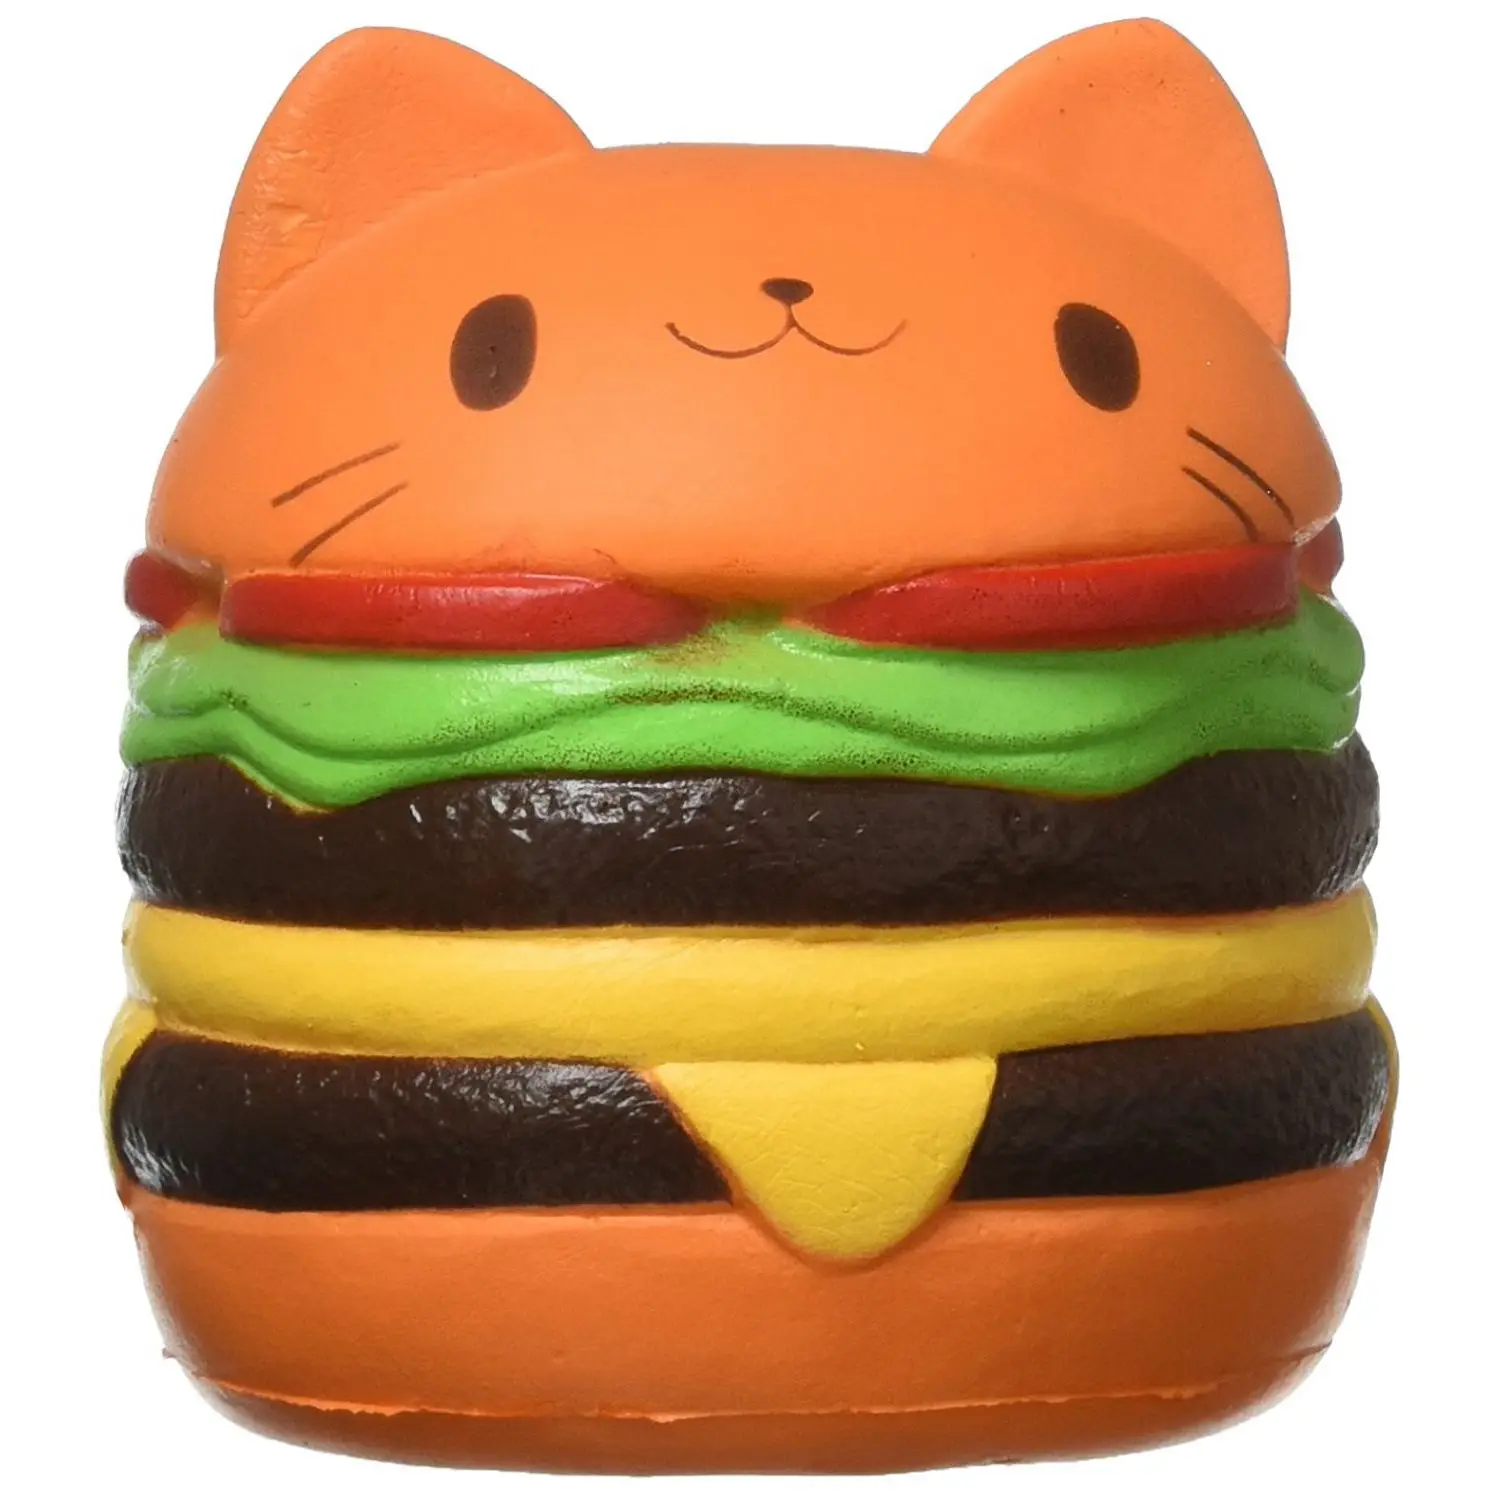 Squishy Cat еда, гамбургер Squishys торт снятие стресса игрушки ароматические для сжимания медленно распрямляющаяся забавная игрушка снять снятие